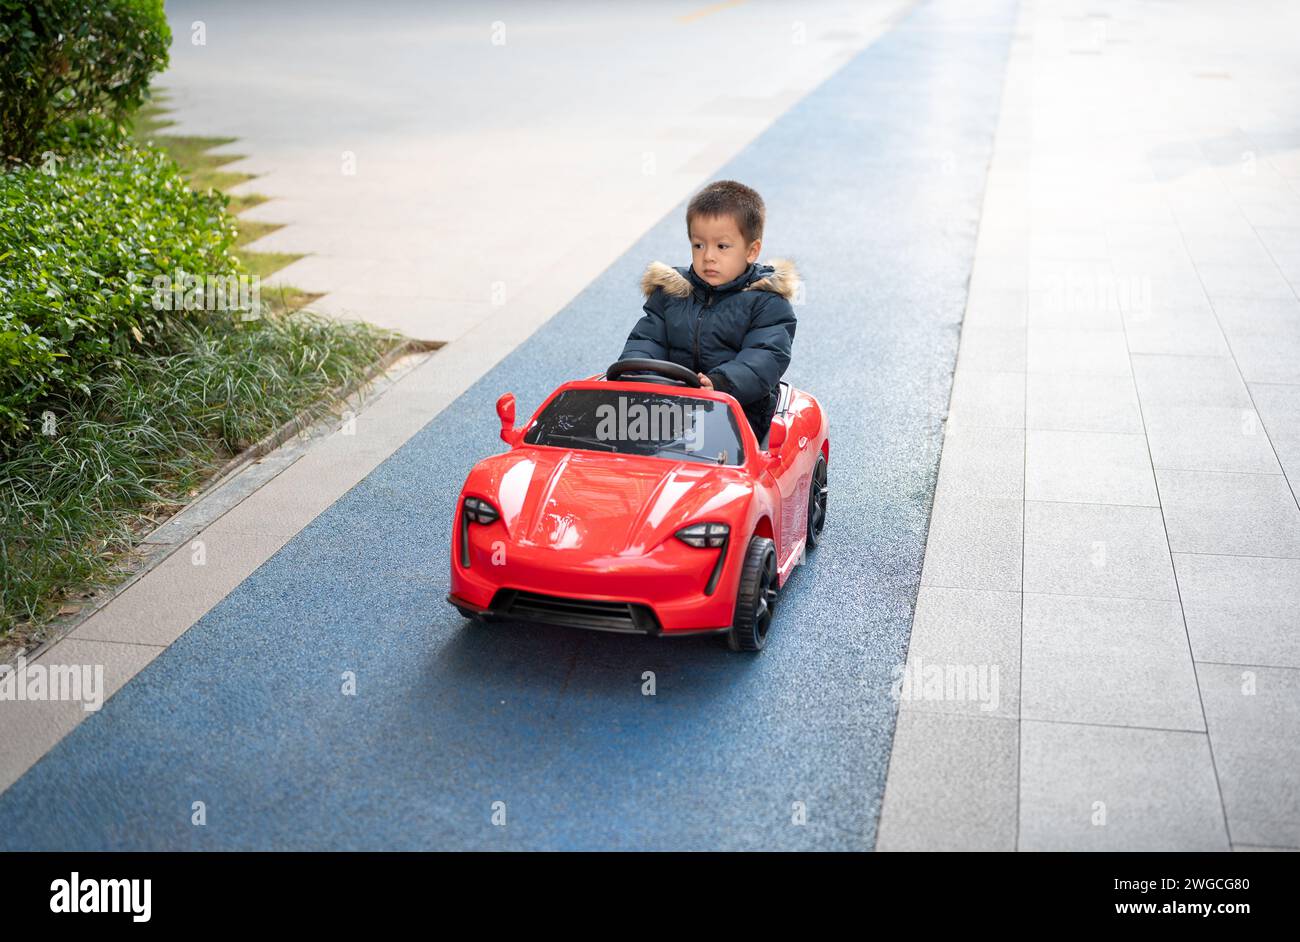 Un giovane bimbo multirazziale naviga con gioia sulla pista da corsa del quartiere a bordo di un'auto giocattolo sportiva rossa, sorridendo e assumendo il controllo di Foto Stock